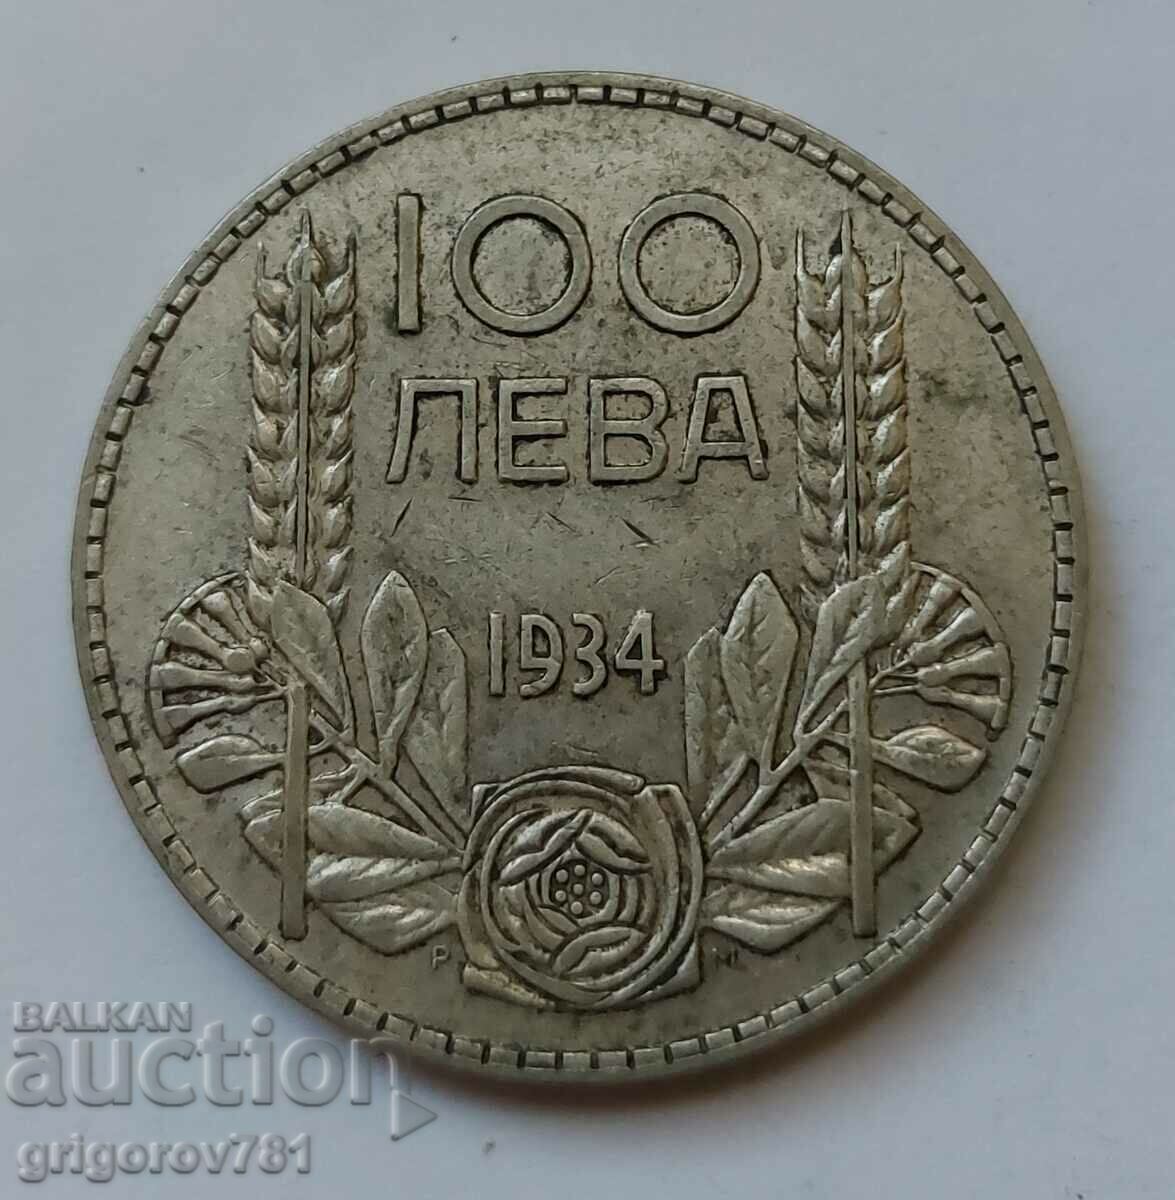 Ασήμι 100 λέβα Βουλγαρία 1934 - ασημένιο νόμισμα #124